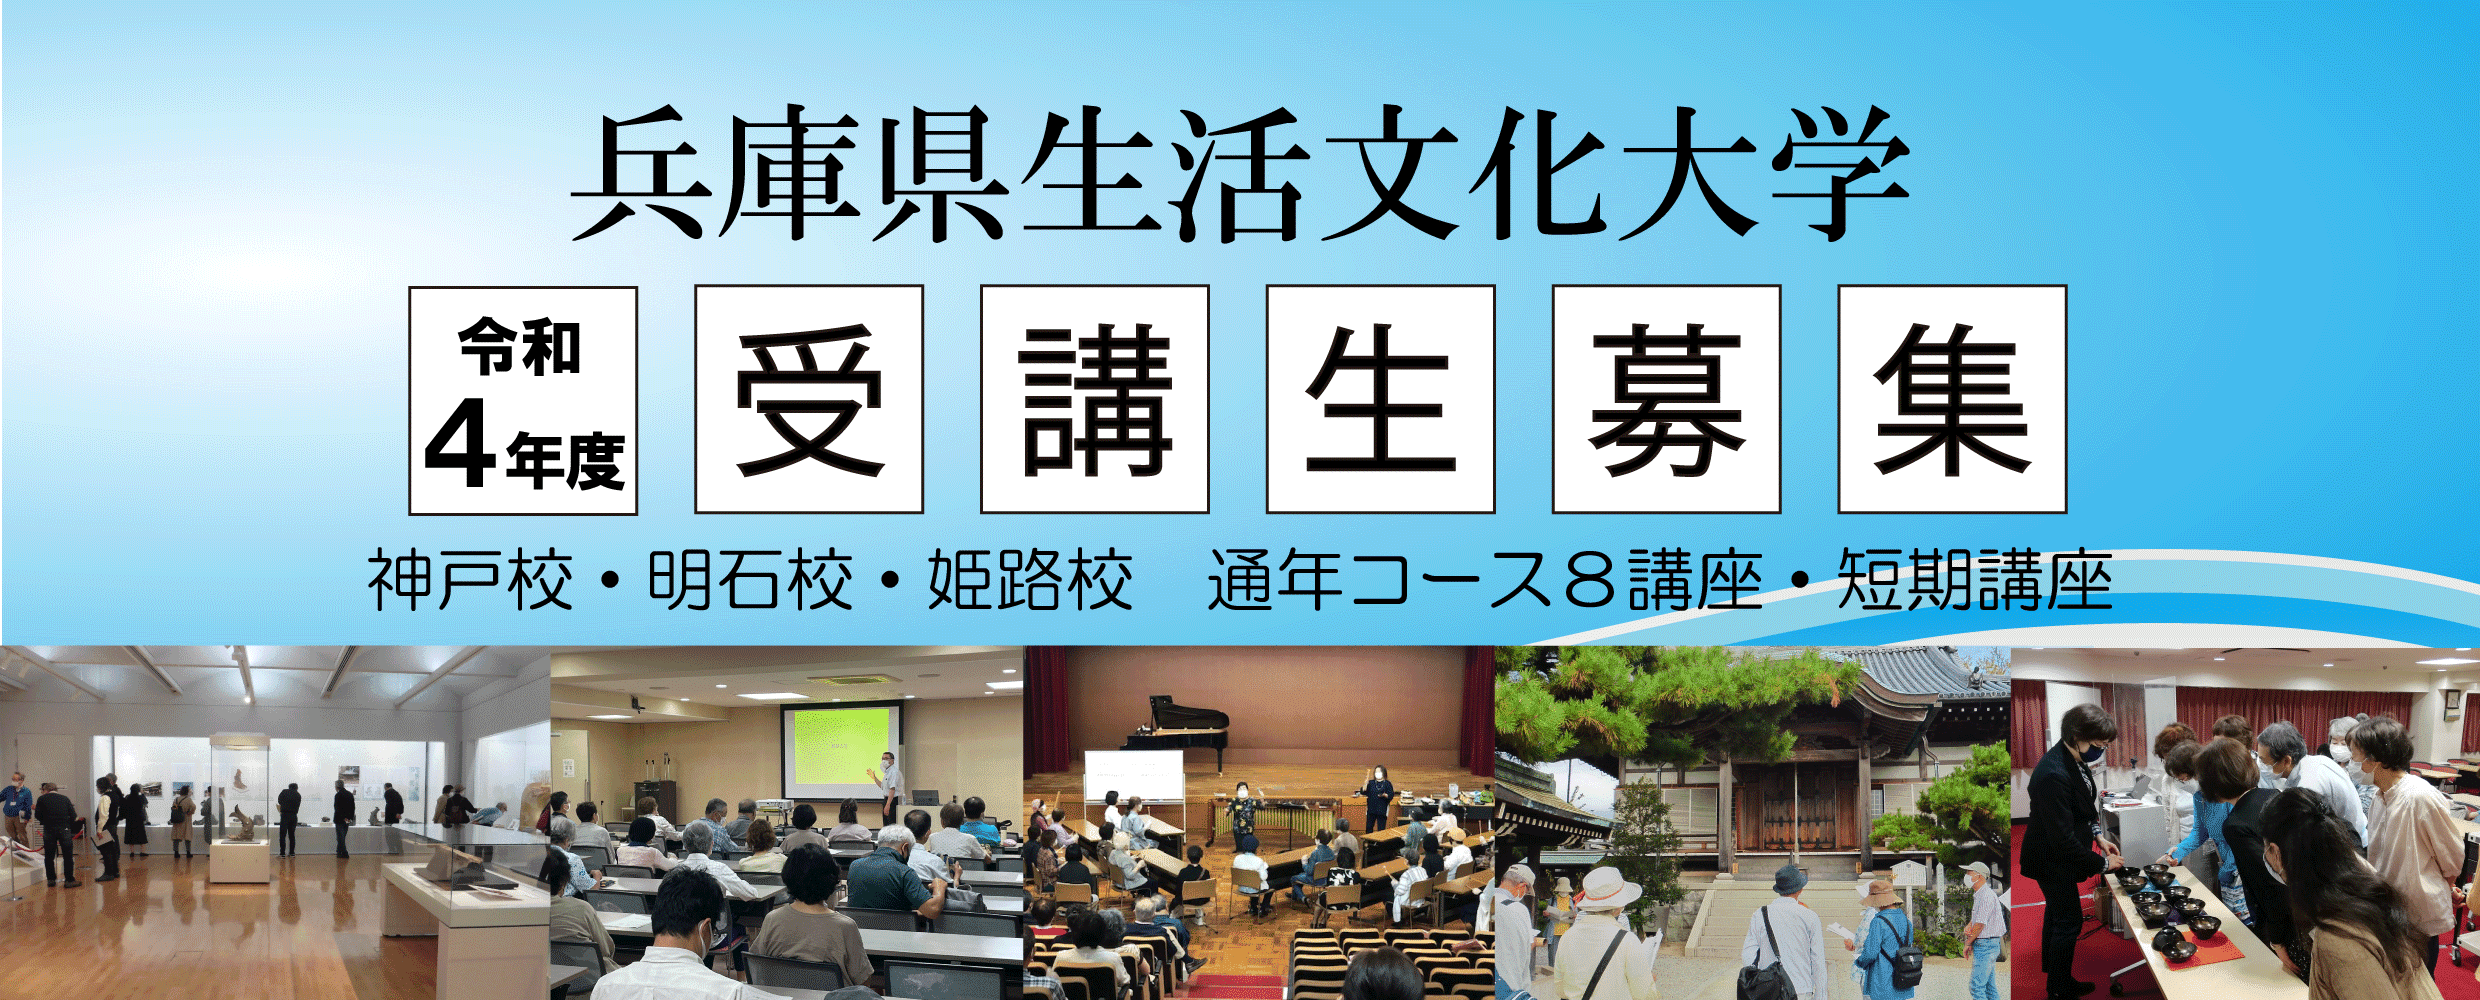 兵庫県生活文化大学 令和4年度受講生募集